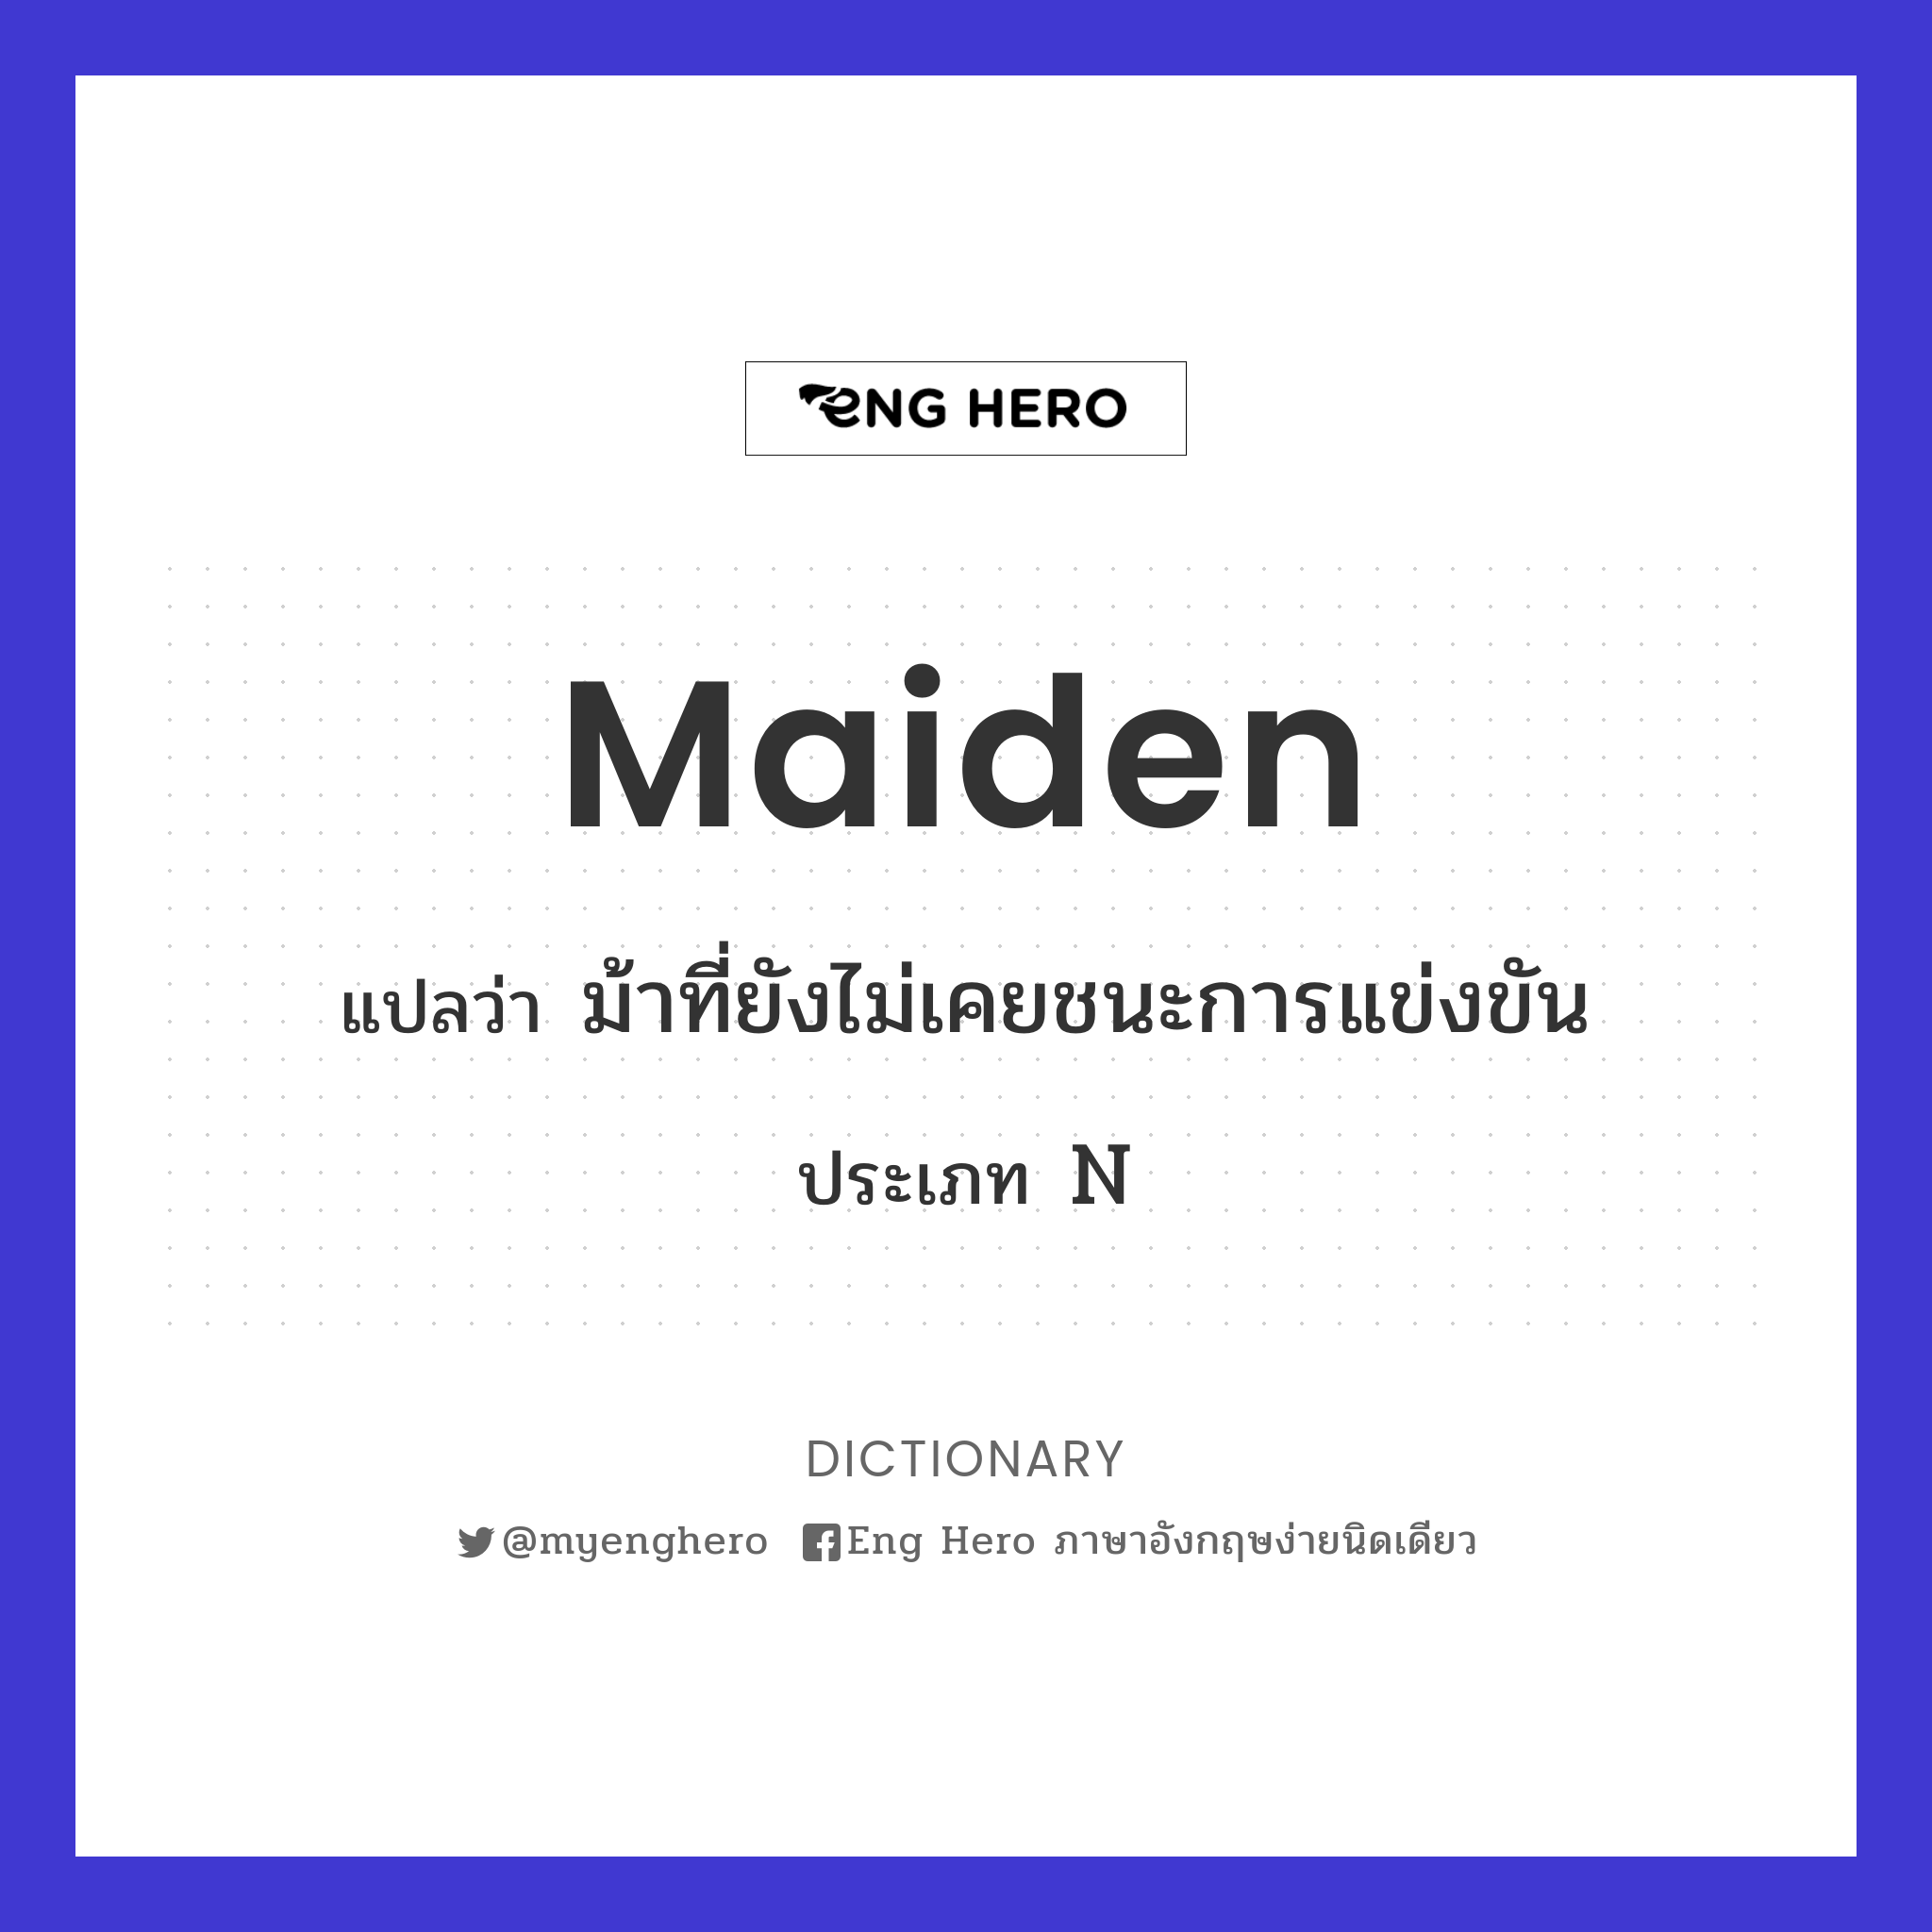 maiden